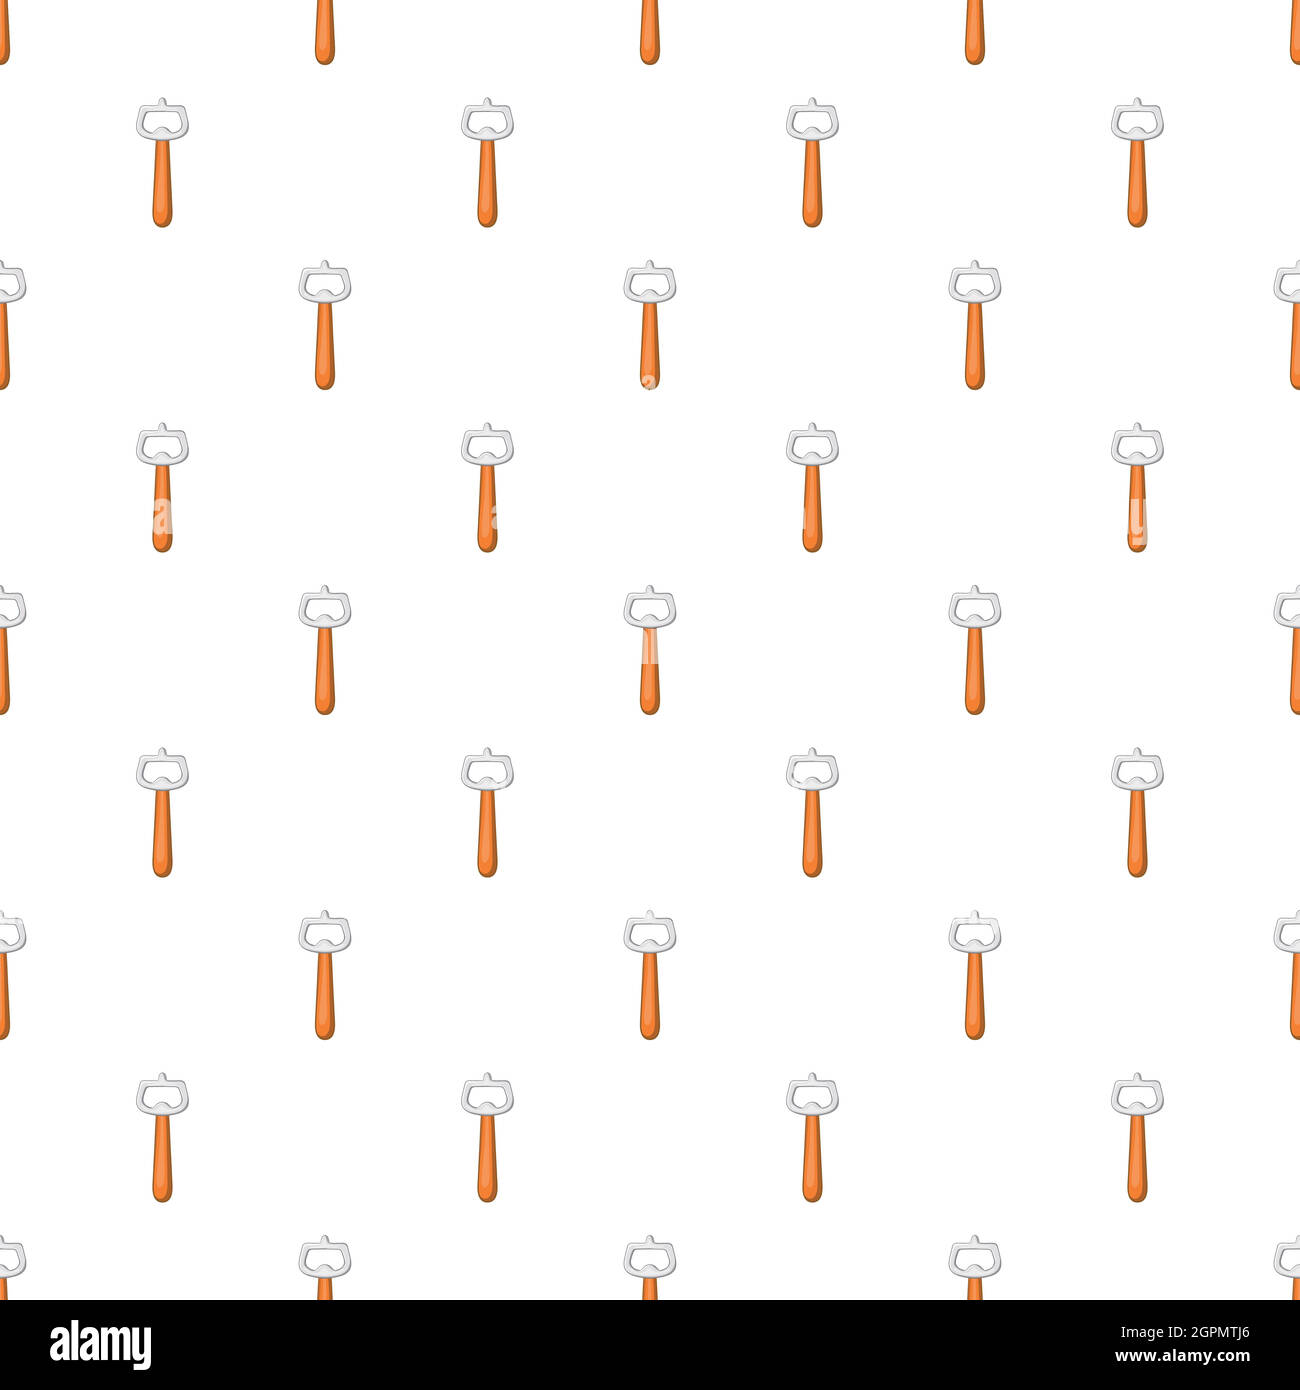 Beer bottle opener pattern, cartoon style Stock Vector